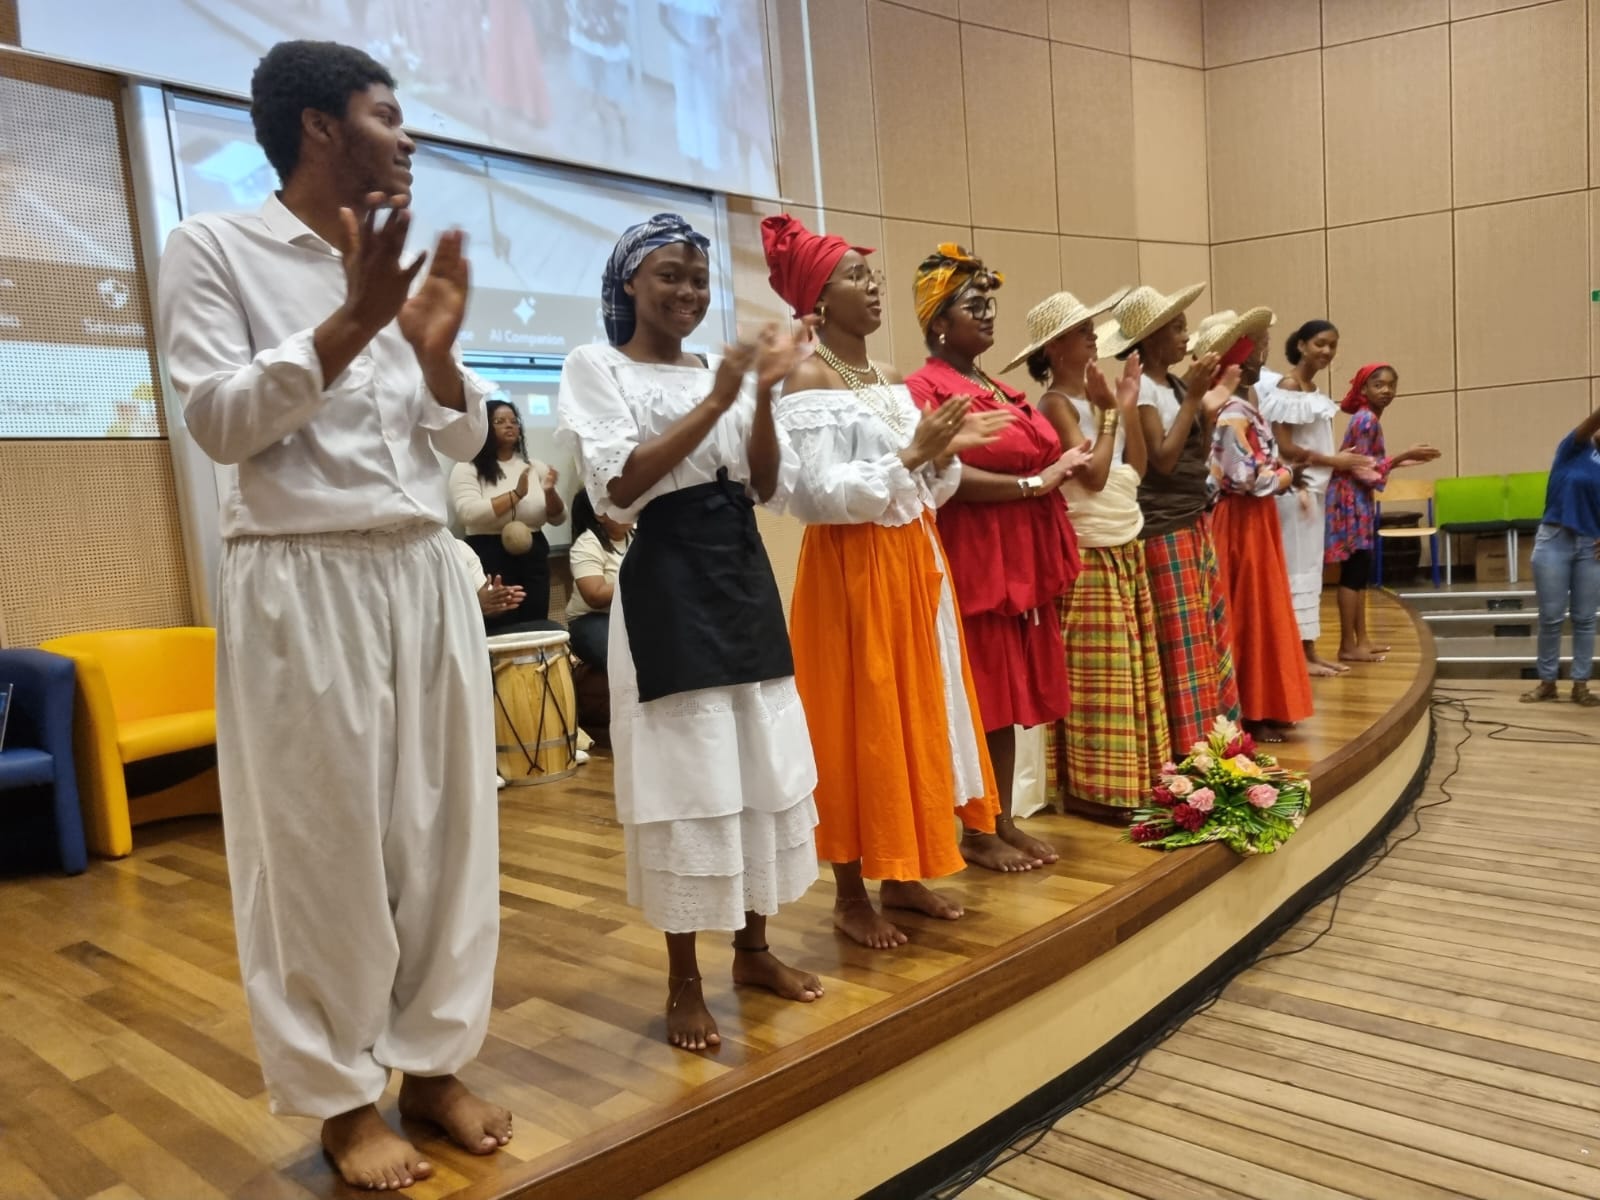     Gwo Ka et tradition s’invitent à l’Université des Antilles

